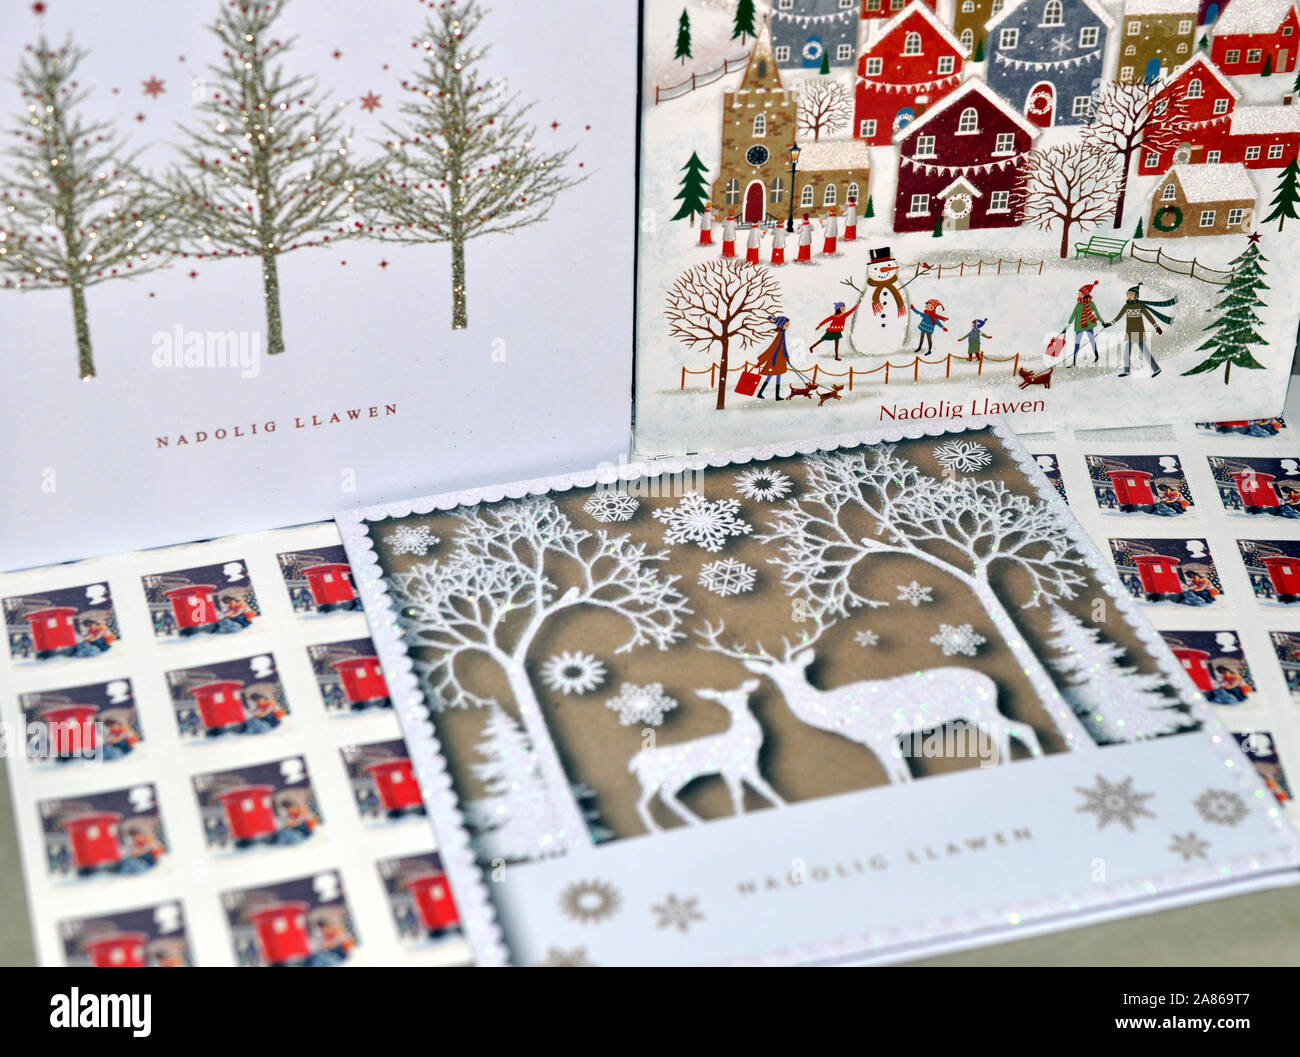 Nadolig Llawen, Buon Natale, lingua gallese Natale saluti Card - saluti della stagione Foto Stock